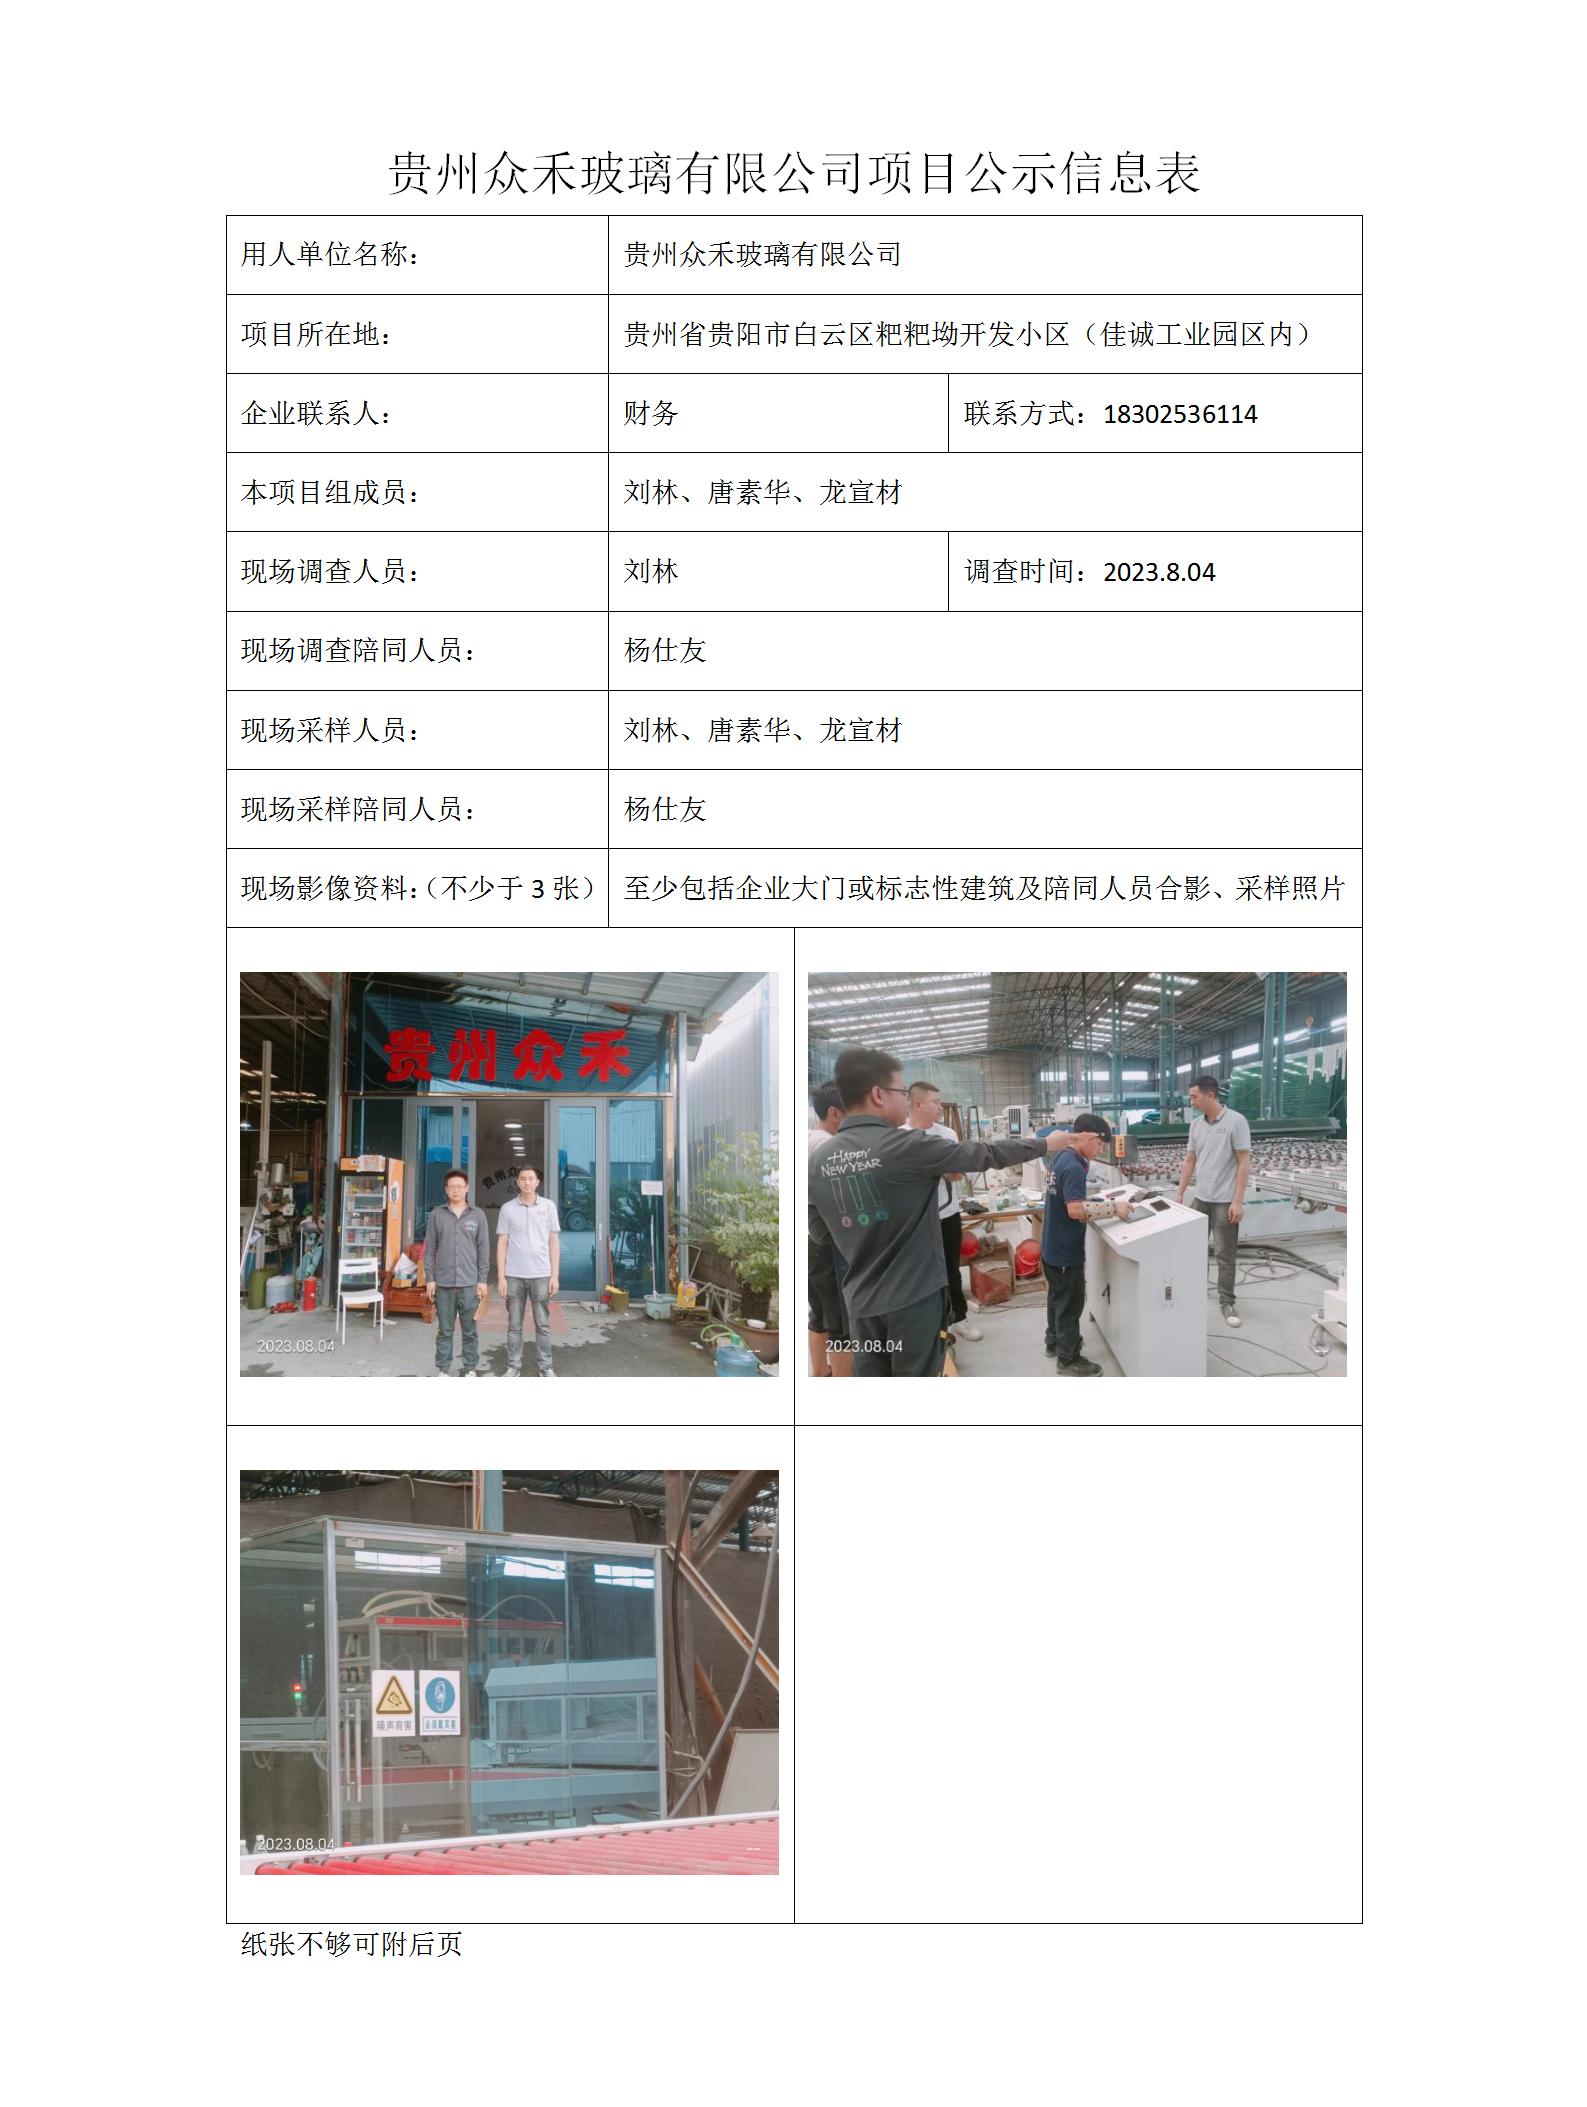 项目公示信息表-刘林-众禾玻璃_01.jpg